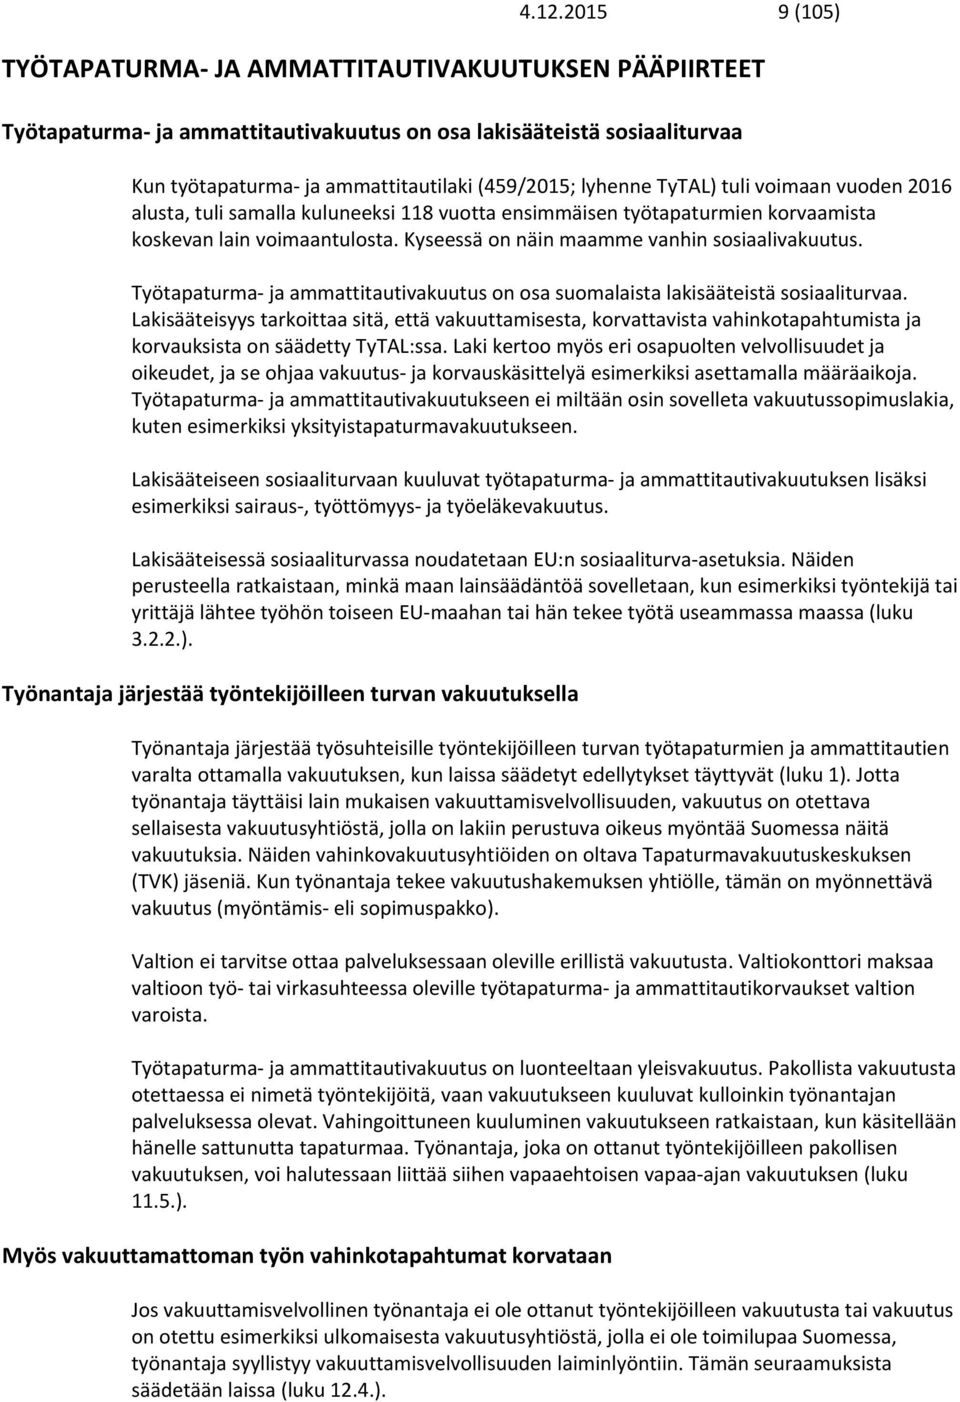 Työtapaturma ja ammattitautivakuutus on osa suomalaista lakisääteistä sosiaaliturvaa.